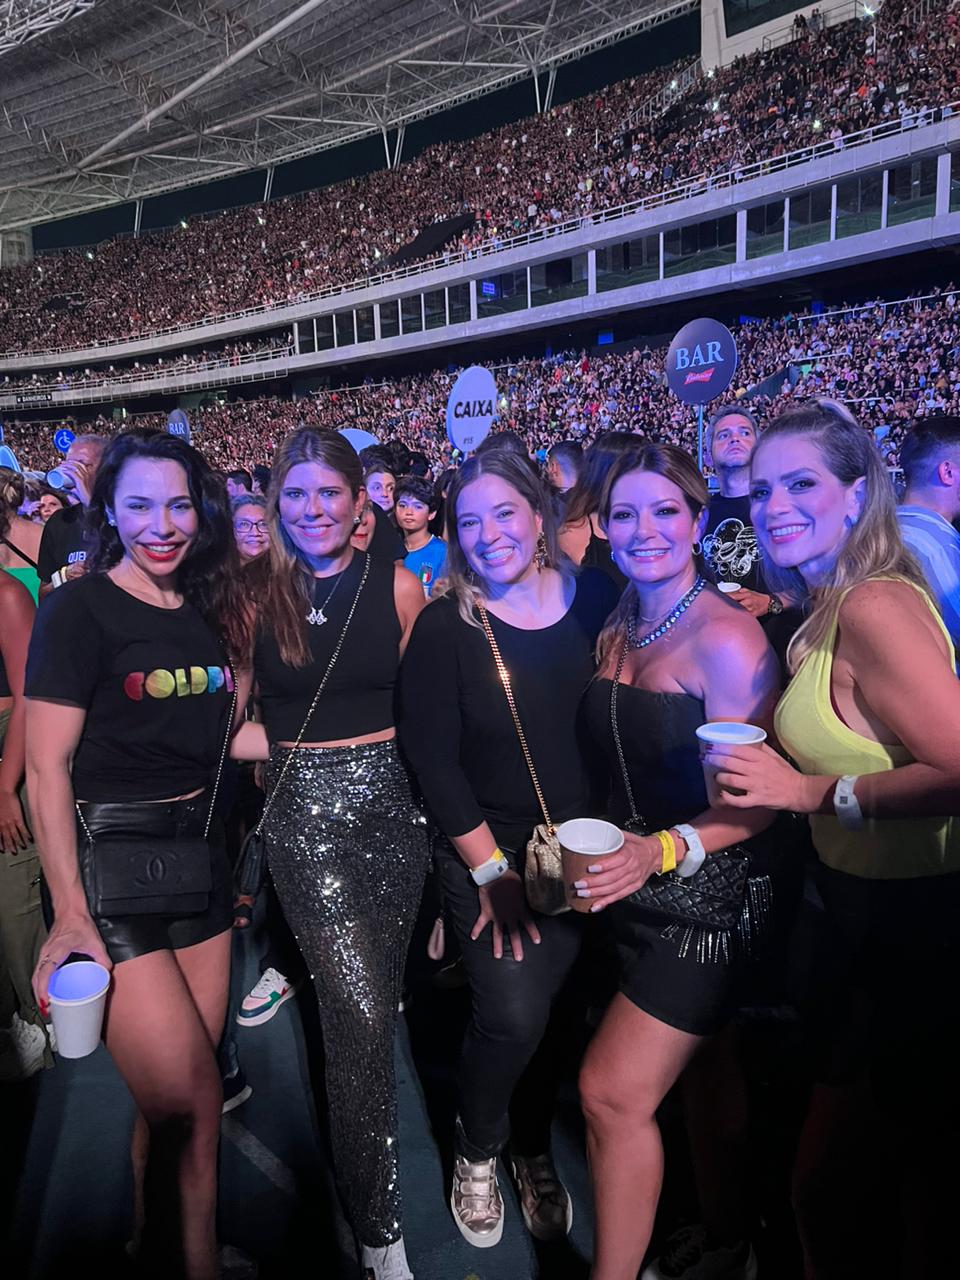 Cearenses tomam a rota do Rio de Janeiro para curtir show do Coldplay